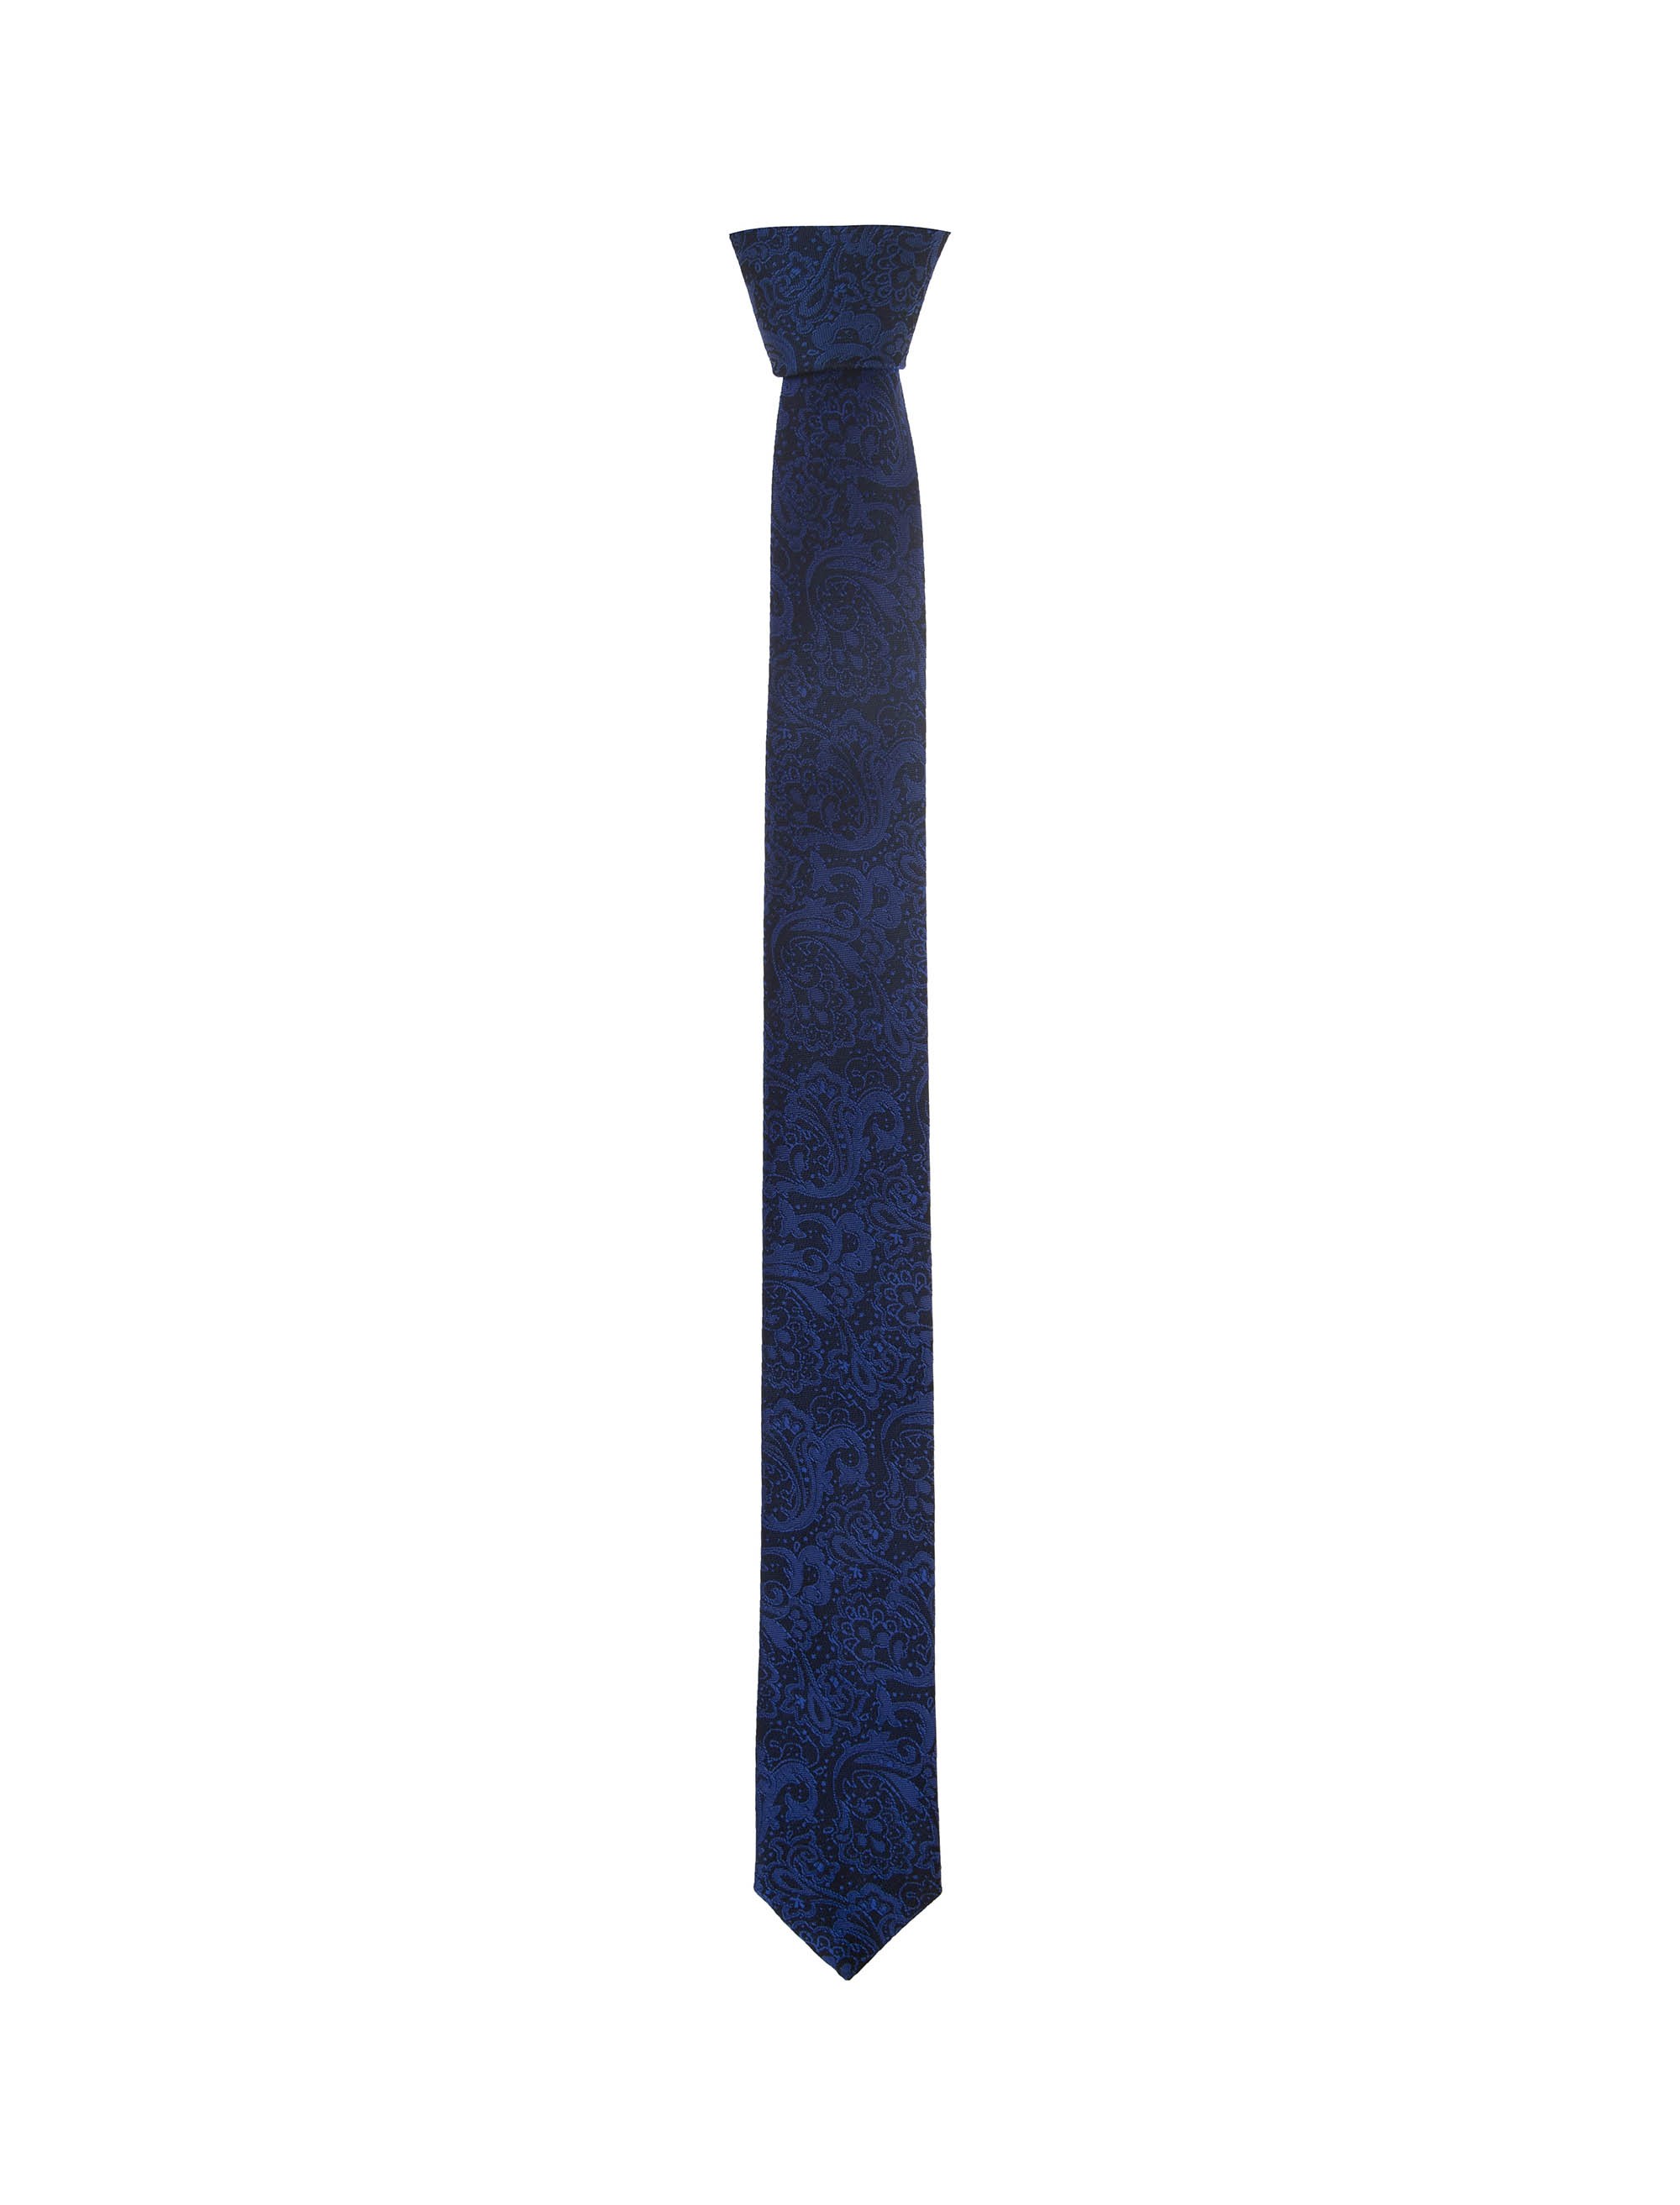 کراوات ابریشم طرح دار مردانه - پاترون تک سایز - آبي مشکي - 1